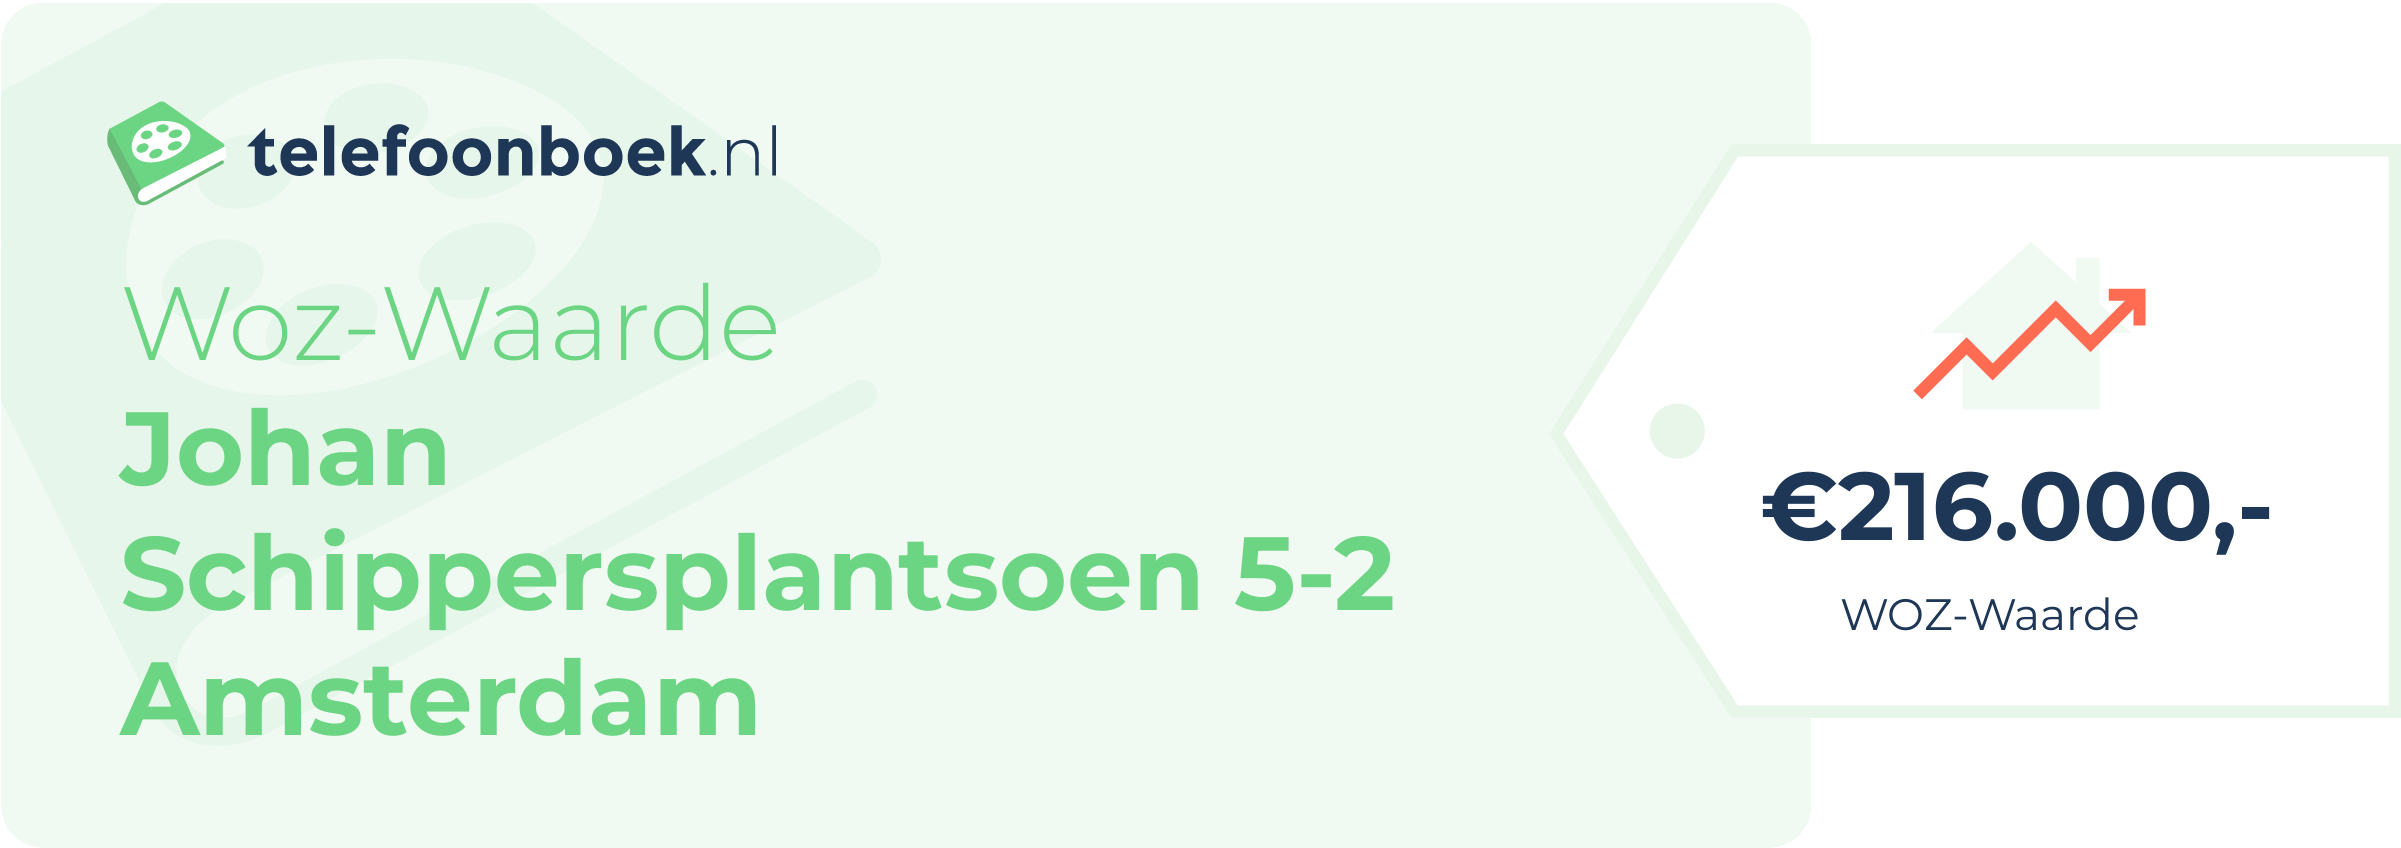 WOZ-waarde Johan Schippersplantsoen 5-2 Amsterdam